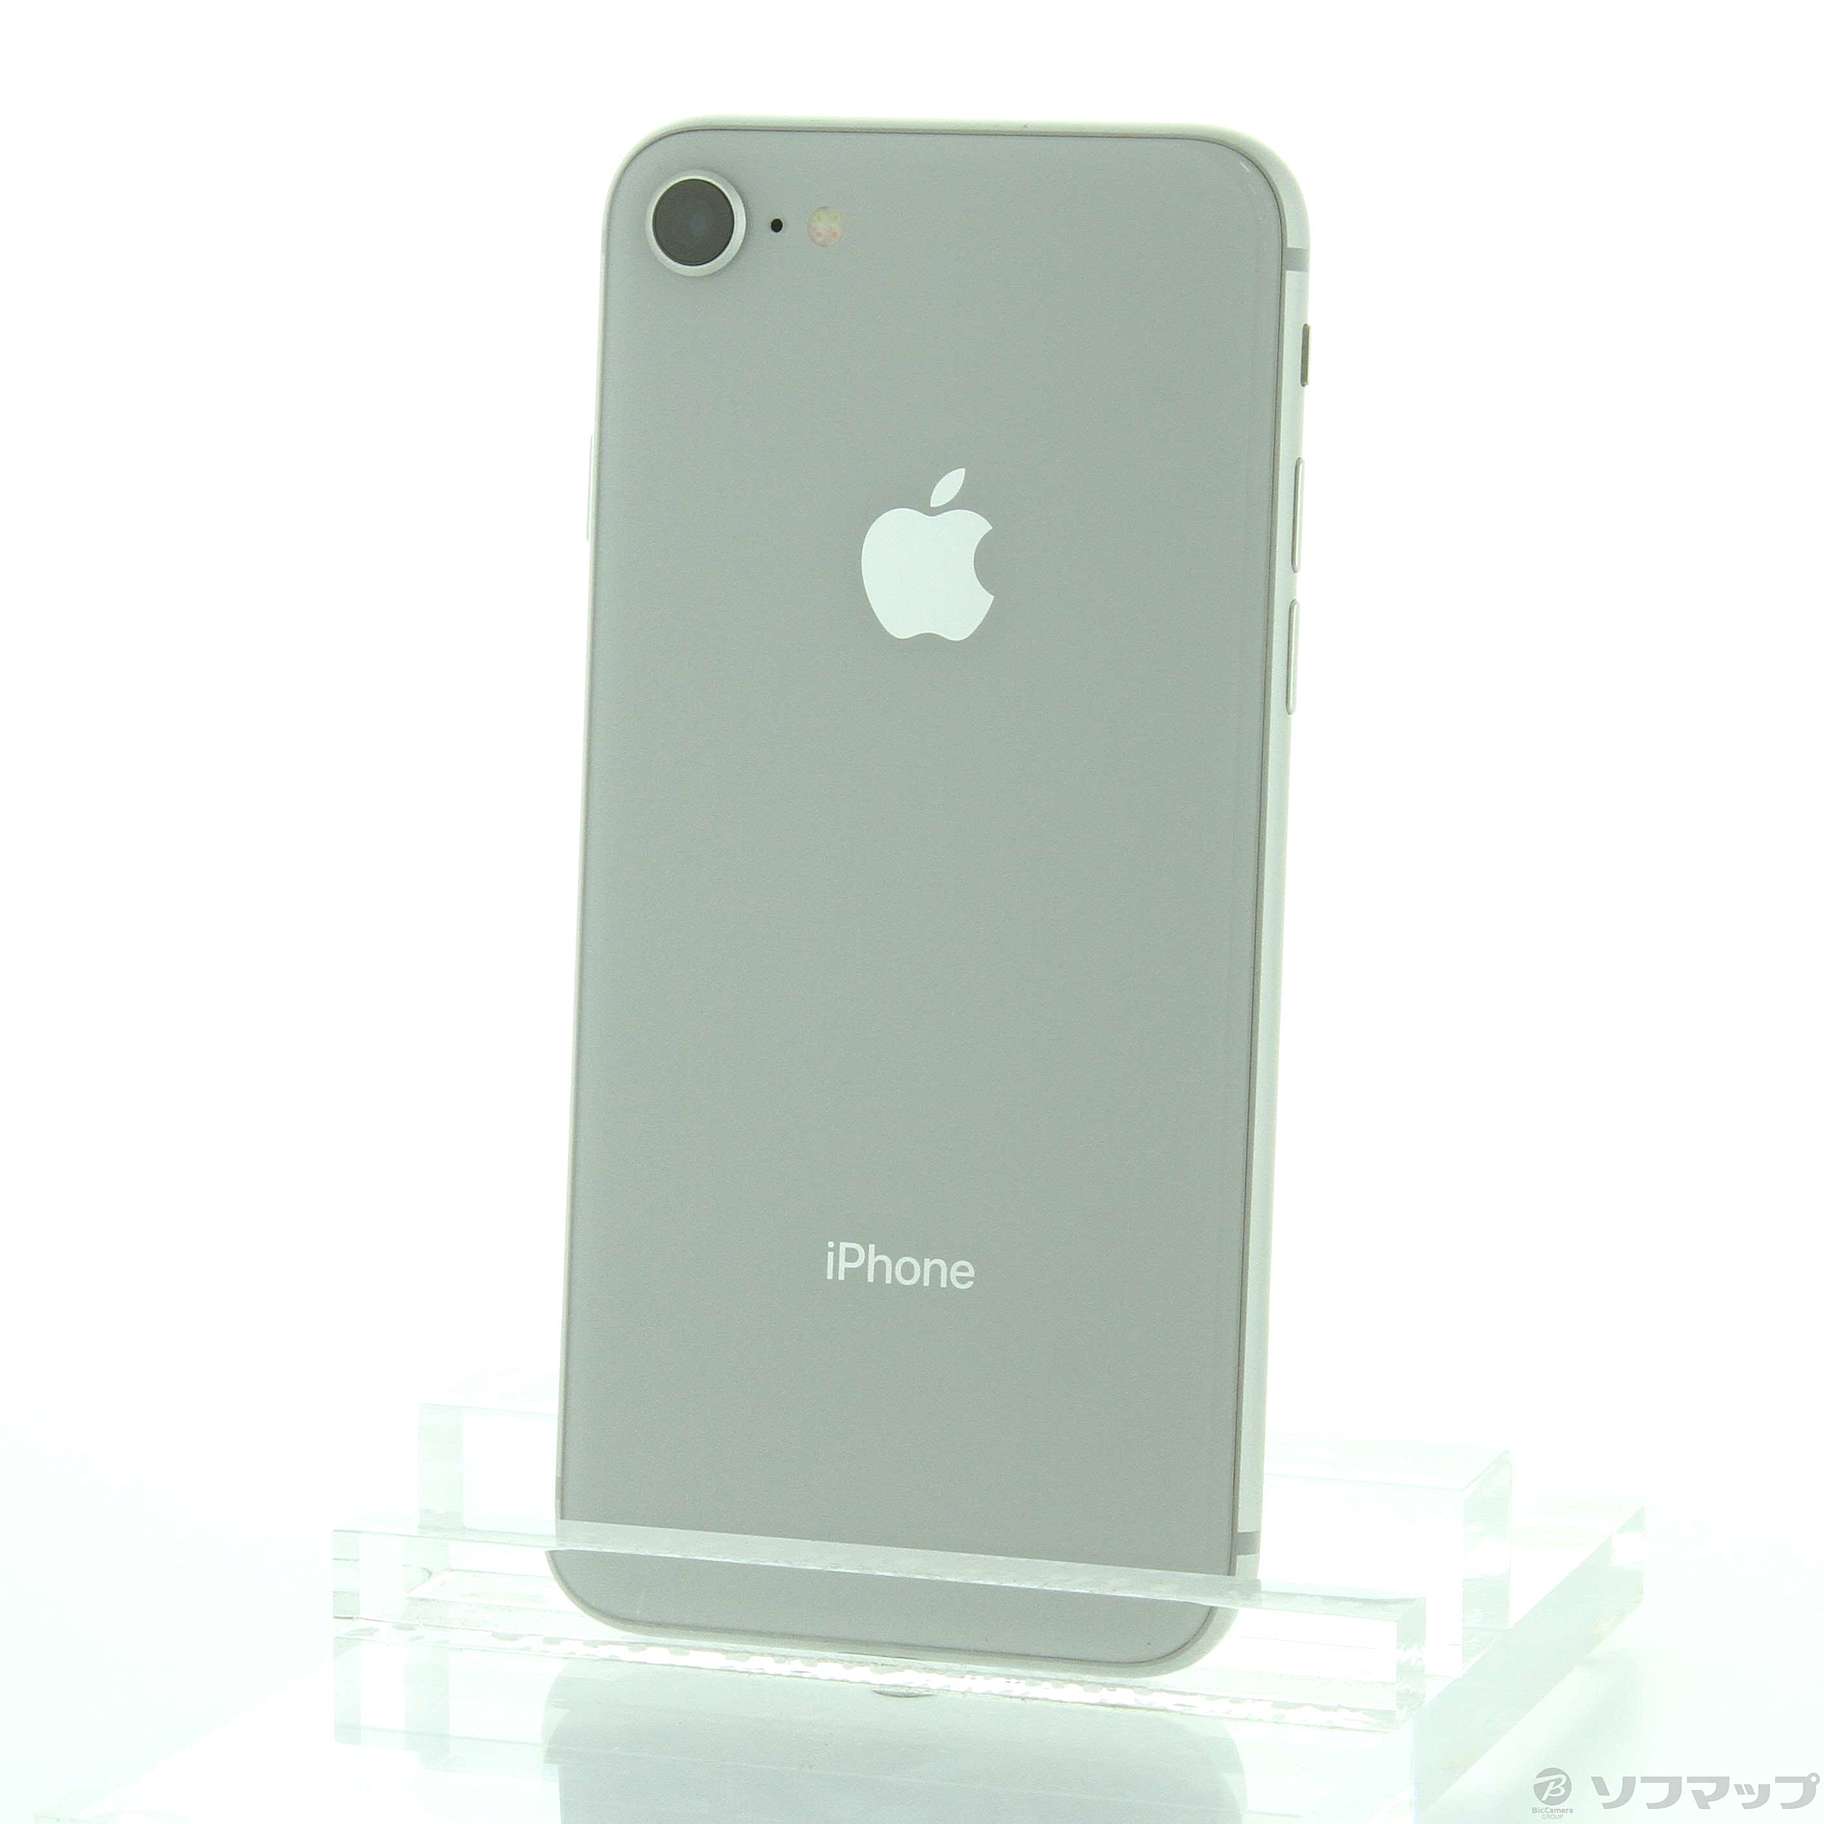 iPhone 8 silver 256GB SIMフリー